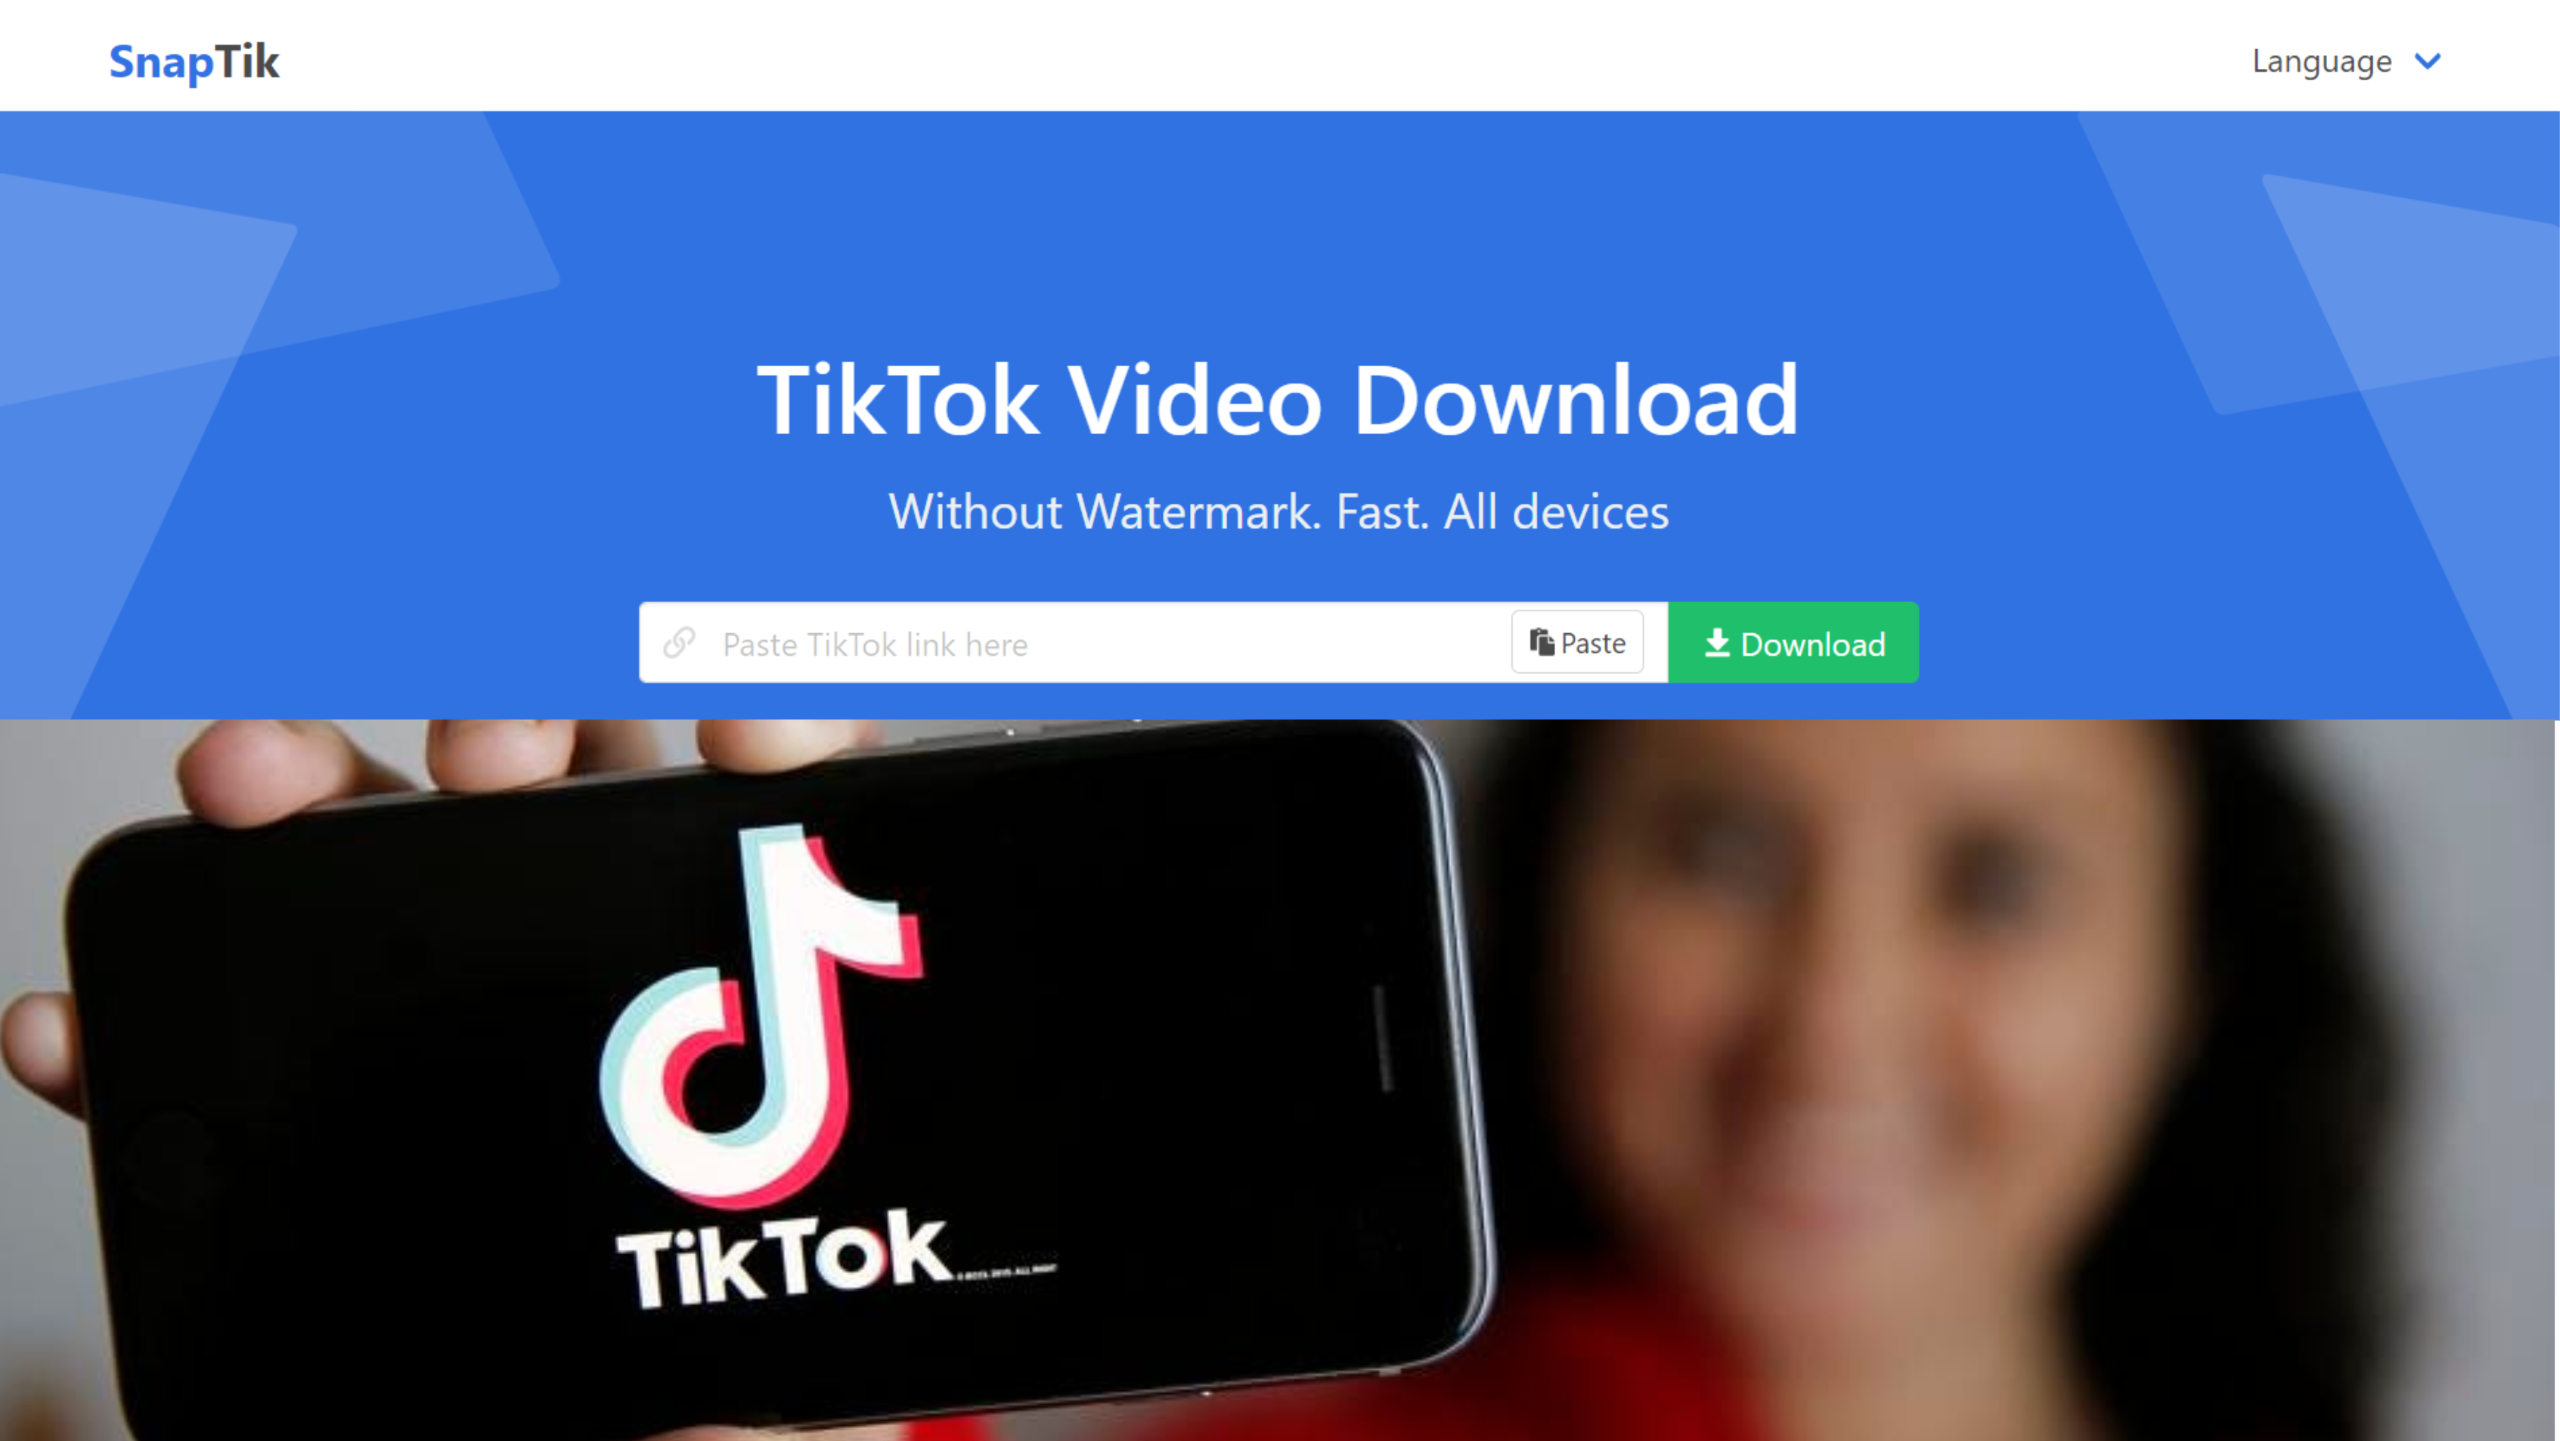 TikTok: Is Snaptik safe? + How to download?